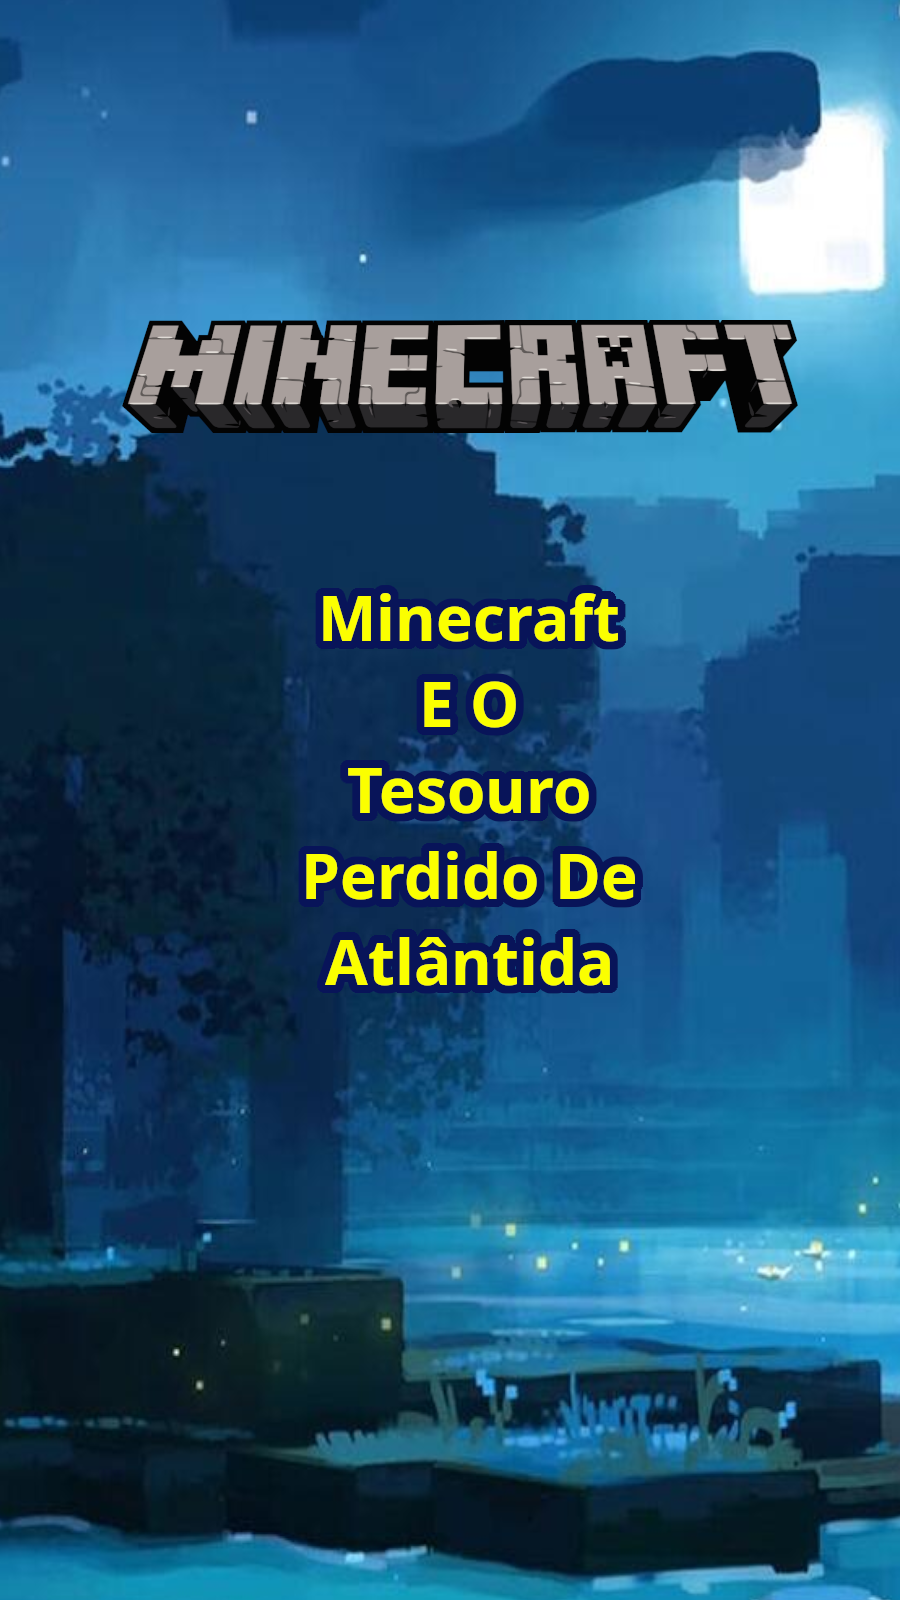 Minecraft e o Tesouro Perdido de Atlântida - Episódio 2